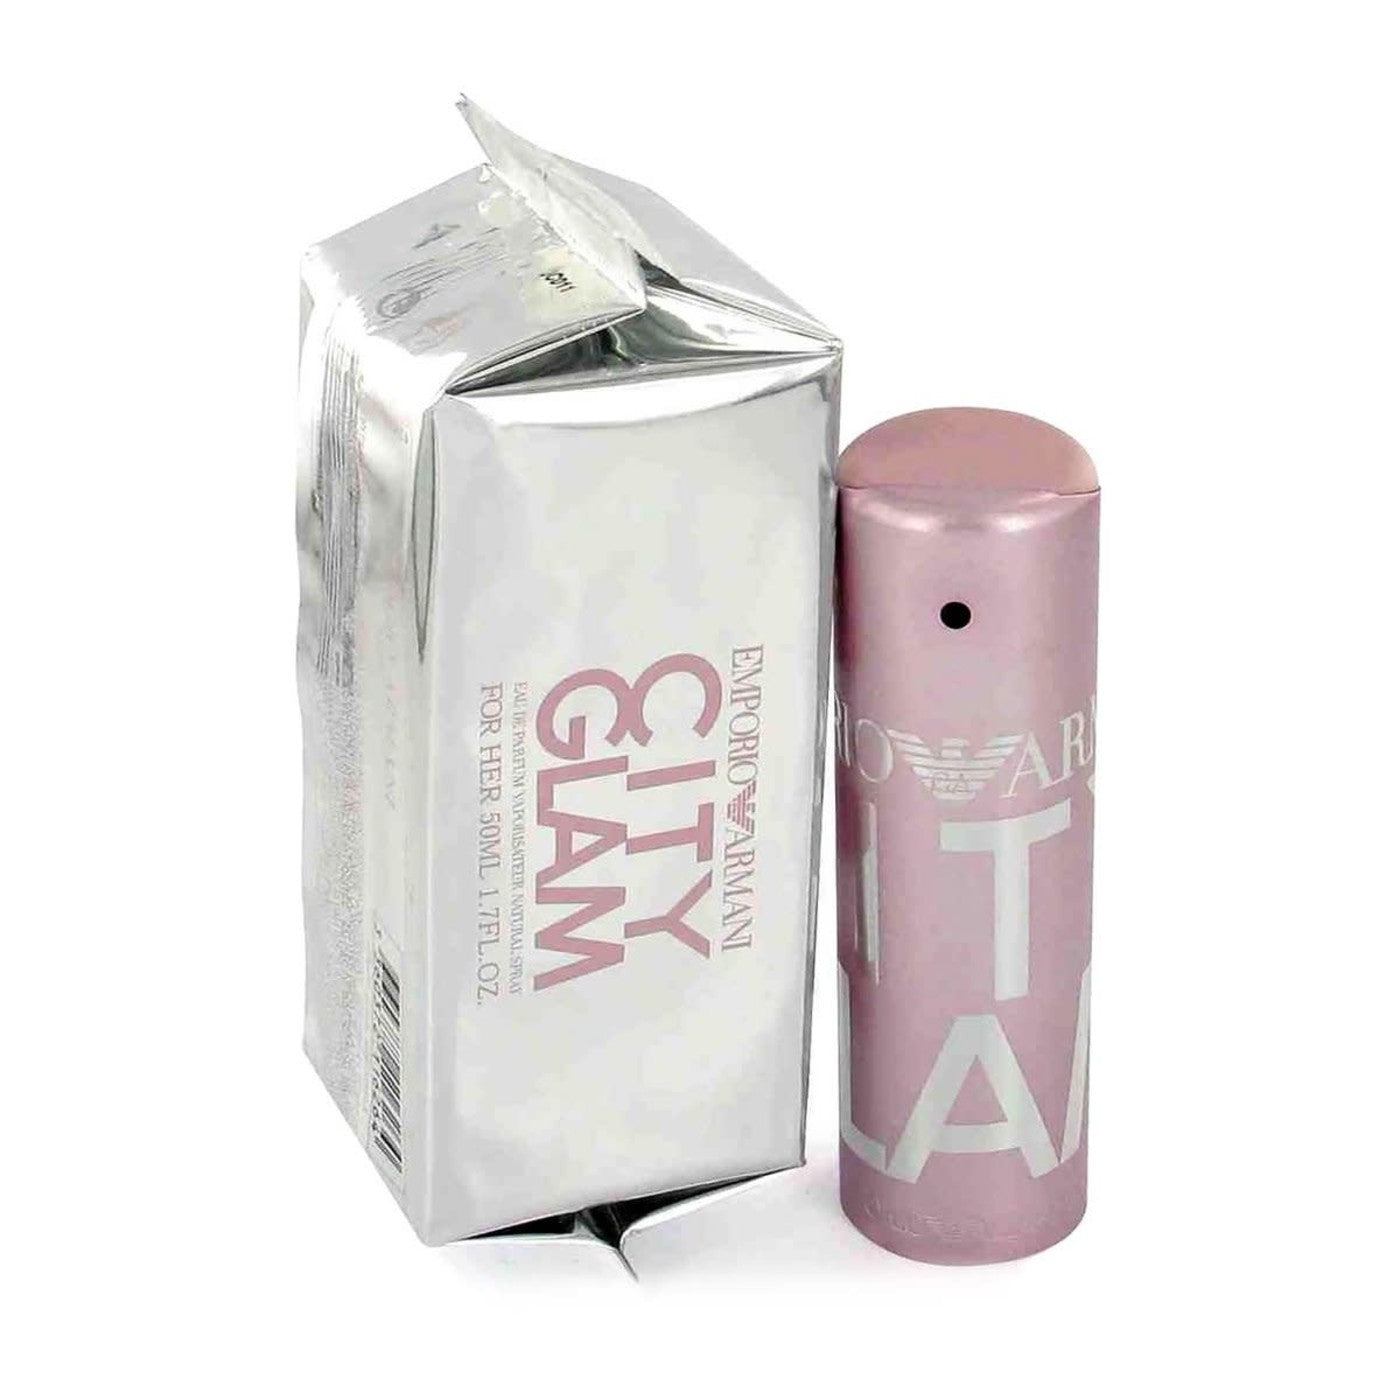 Emporio Armani City Glam 100 ml Eau De Parfum Spray for Women